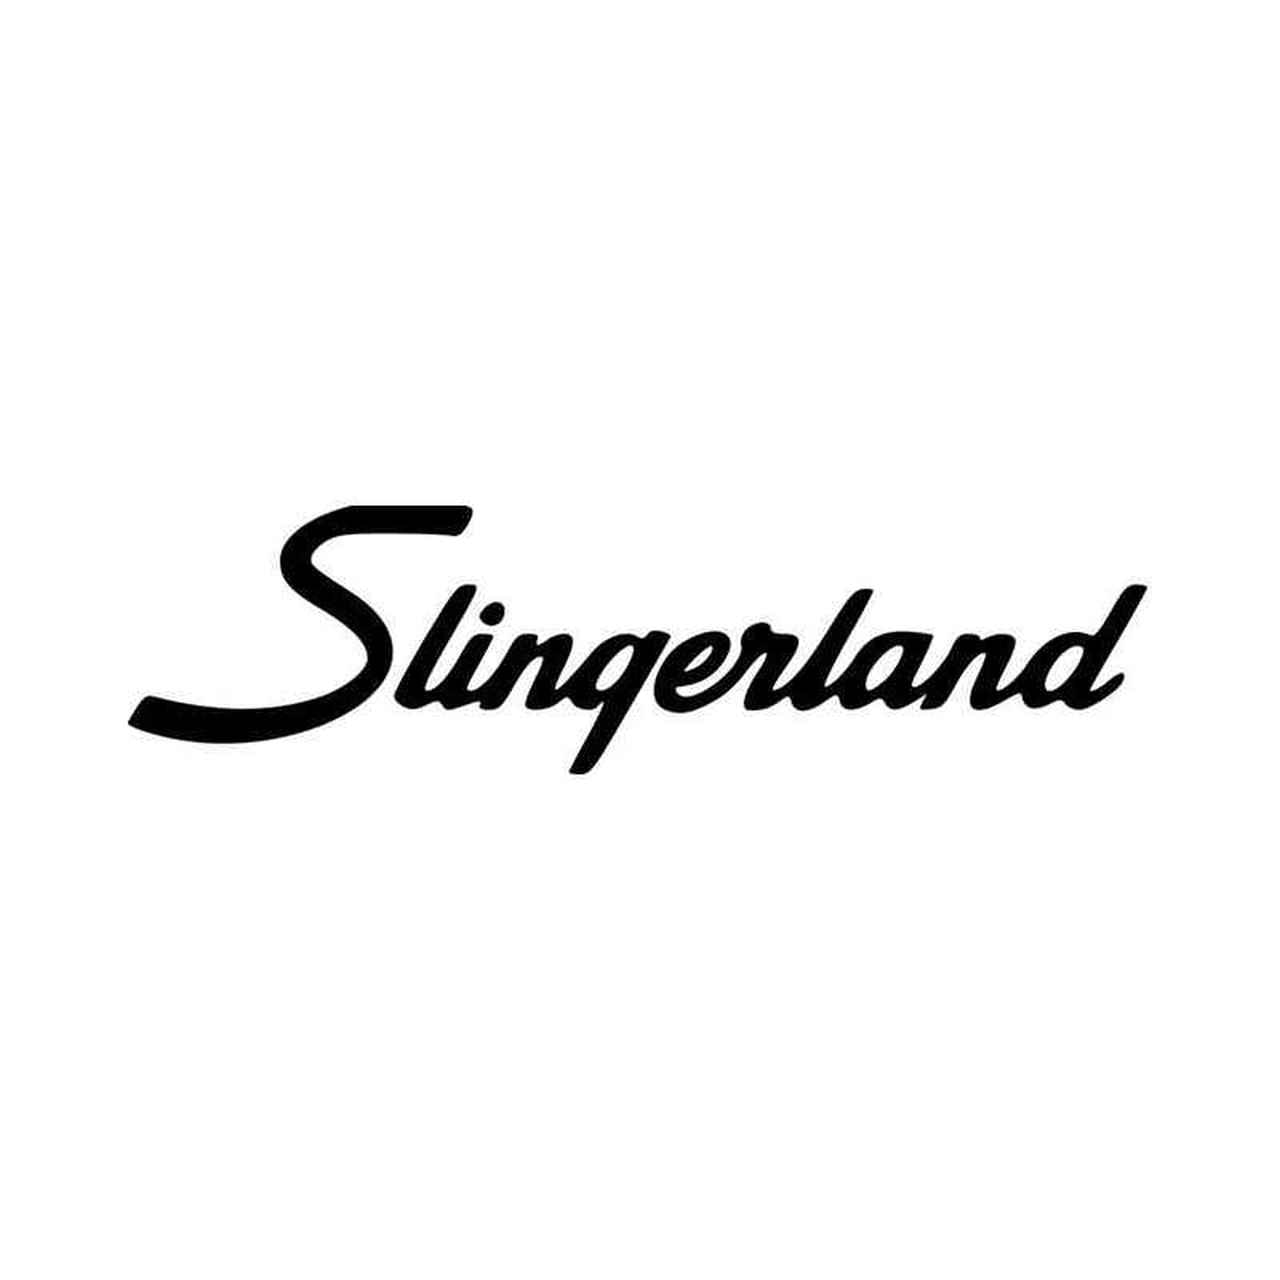 Slingerland Logo - Slingerland Drum Logo Graphic Vinyl Decal Sticker